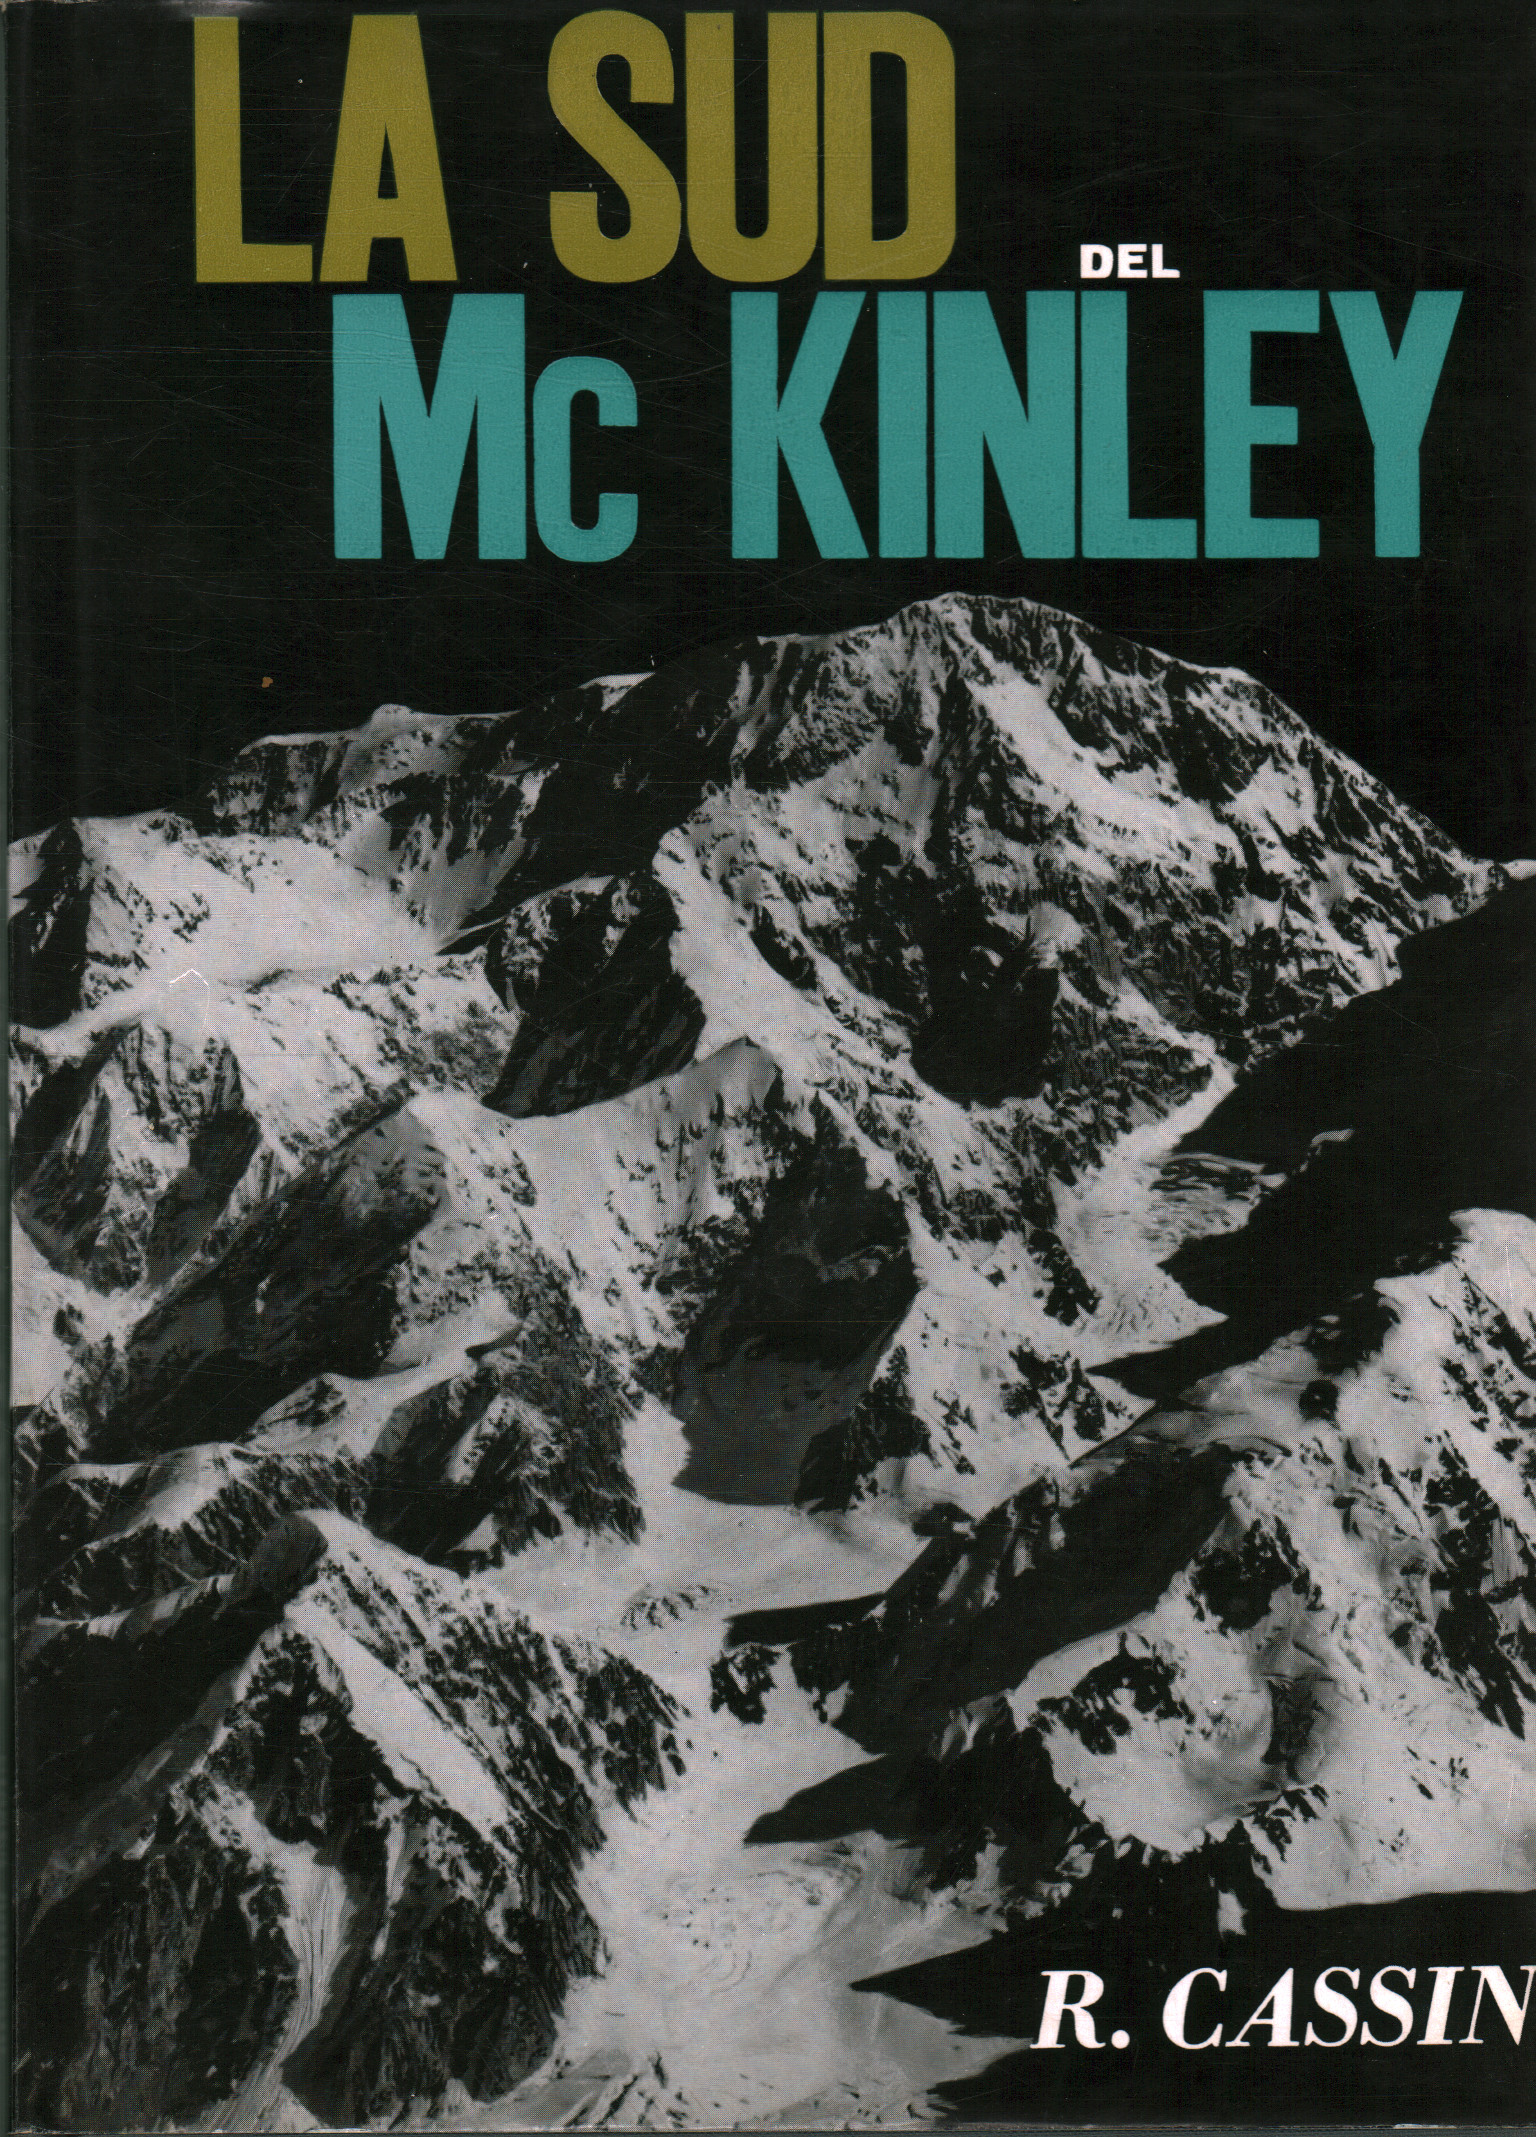 La Sud del Mc Kinley, Riccardo Cassin